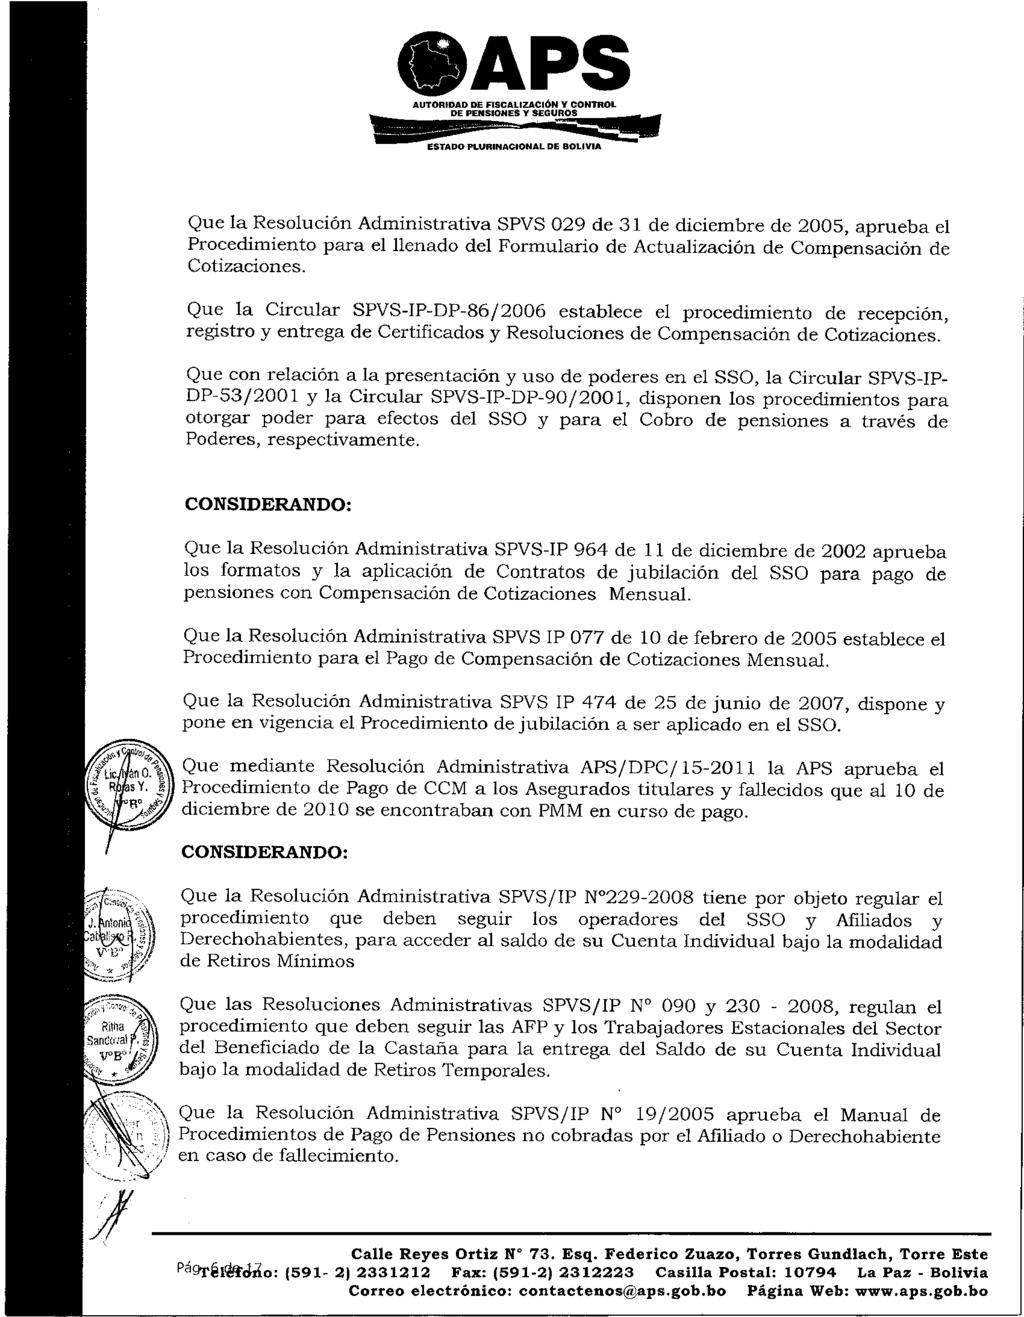 AUTORIDAD DE FISCALIZACIÓN Y CONTROL DE PENSIONES Y SEGUROS - ESTADO PLURINACIONAL DE BOLIVIA Que la Resolución Administrativa SPVS 029 de 31 de diciembre de 2005, aprueba el Procedimiento para el